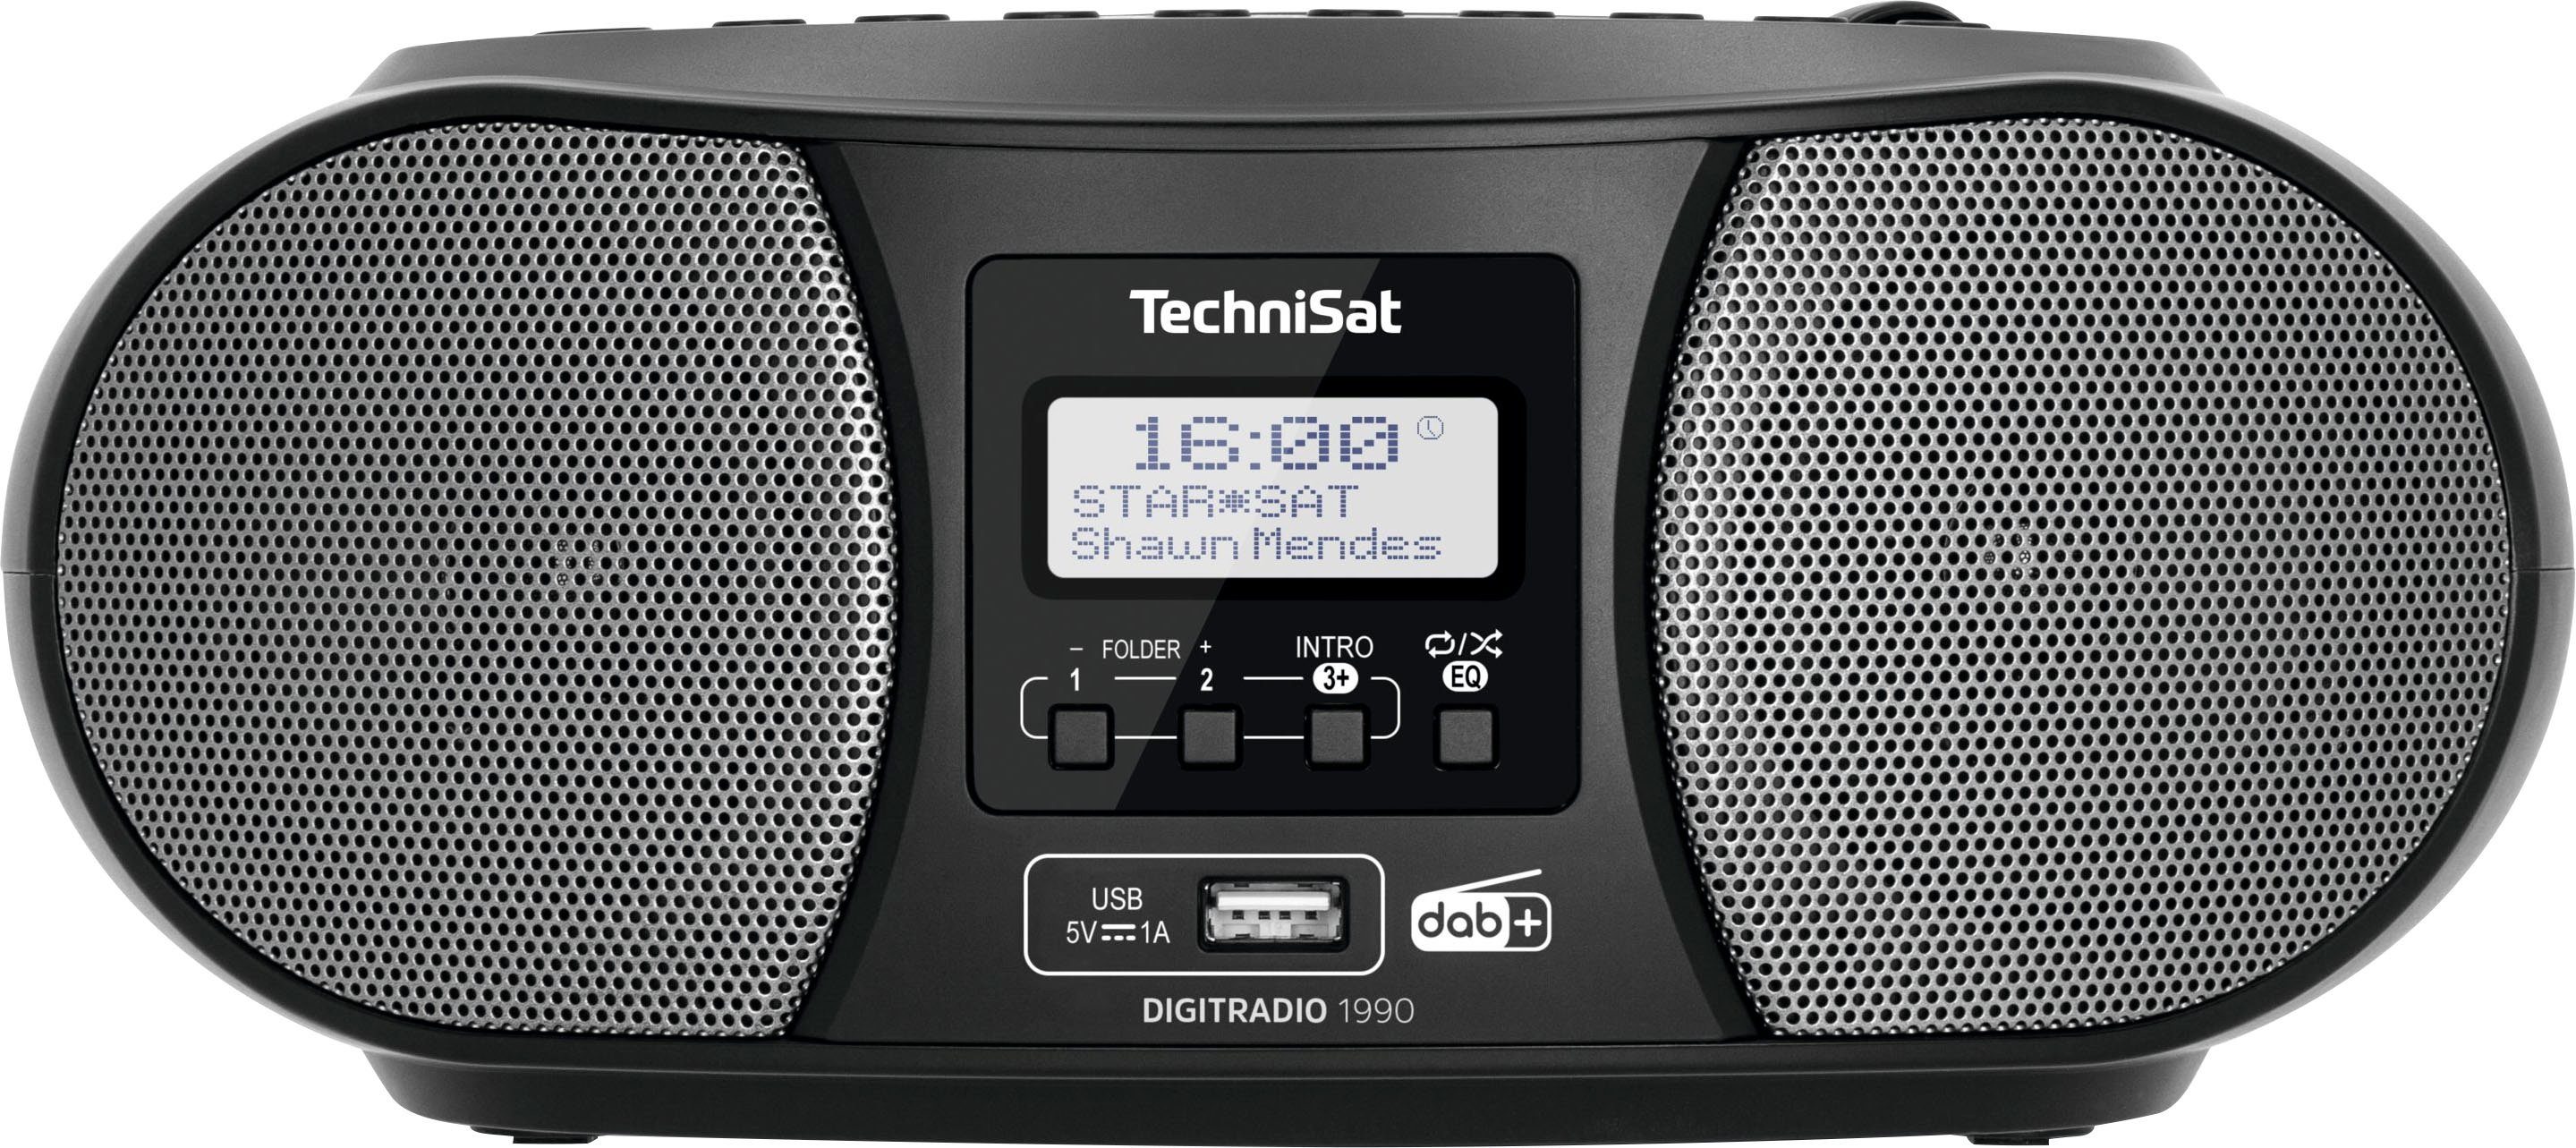 TechniSat schwarz Batteriebetrieb möglich) FM-Tuner, Digitradio Stereo- (Digitalradio UKW, mit Bluetooth, Boombox (DAB), CD-Player, USB, 1990 DAB+,